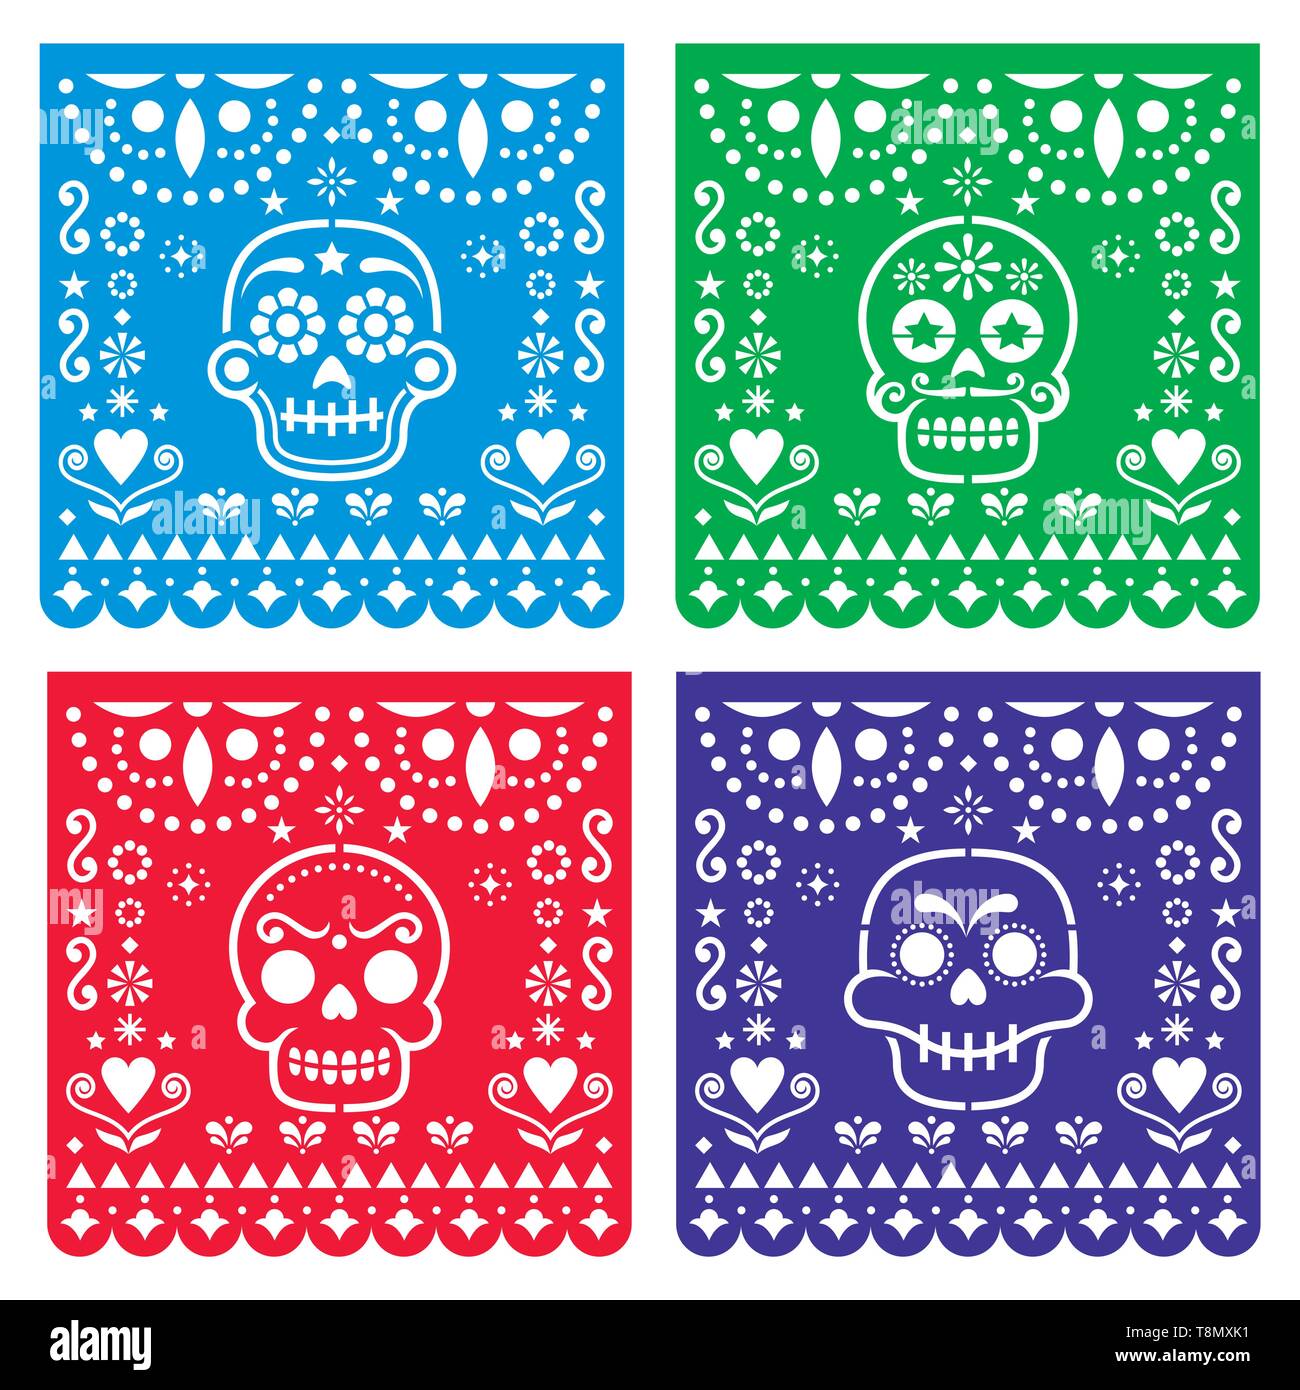 Papel Picado design avec des crânes de sucre mexicain, découper papier collection pattern - Halloween, Dia de los Muertos, jour de célébration des morts Illustration de Vecteur